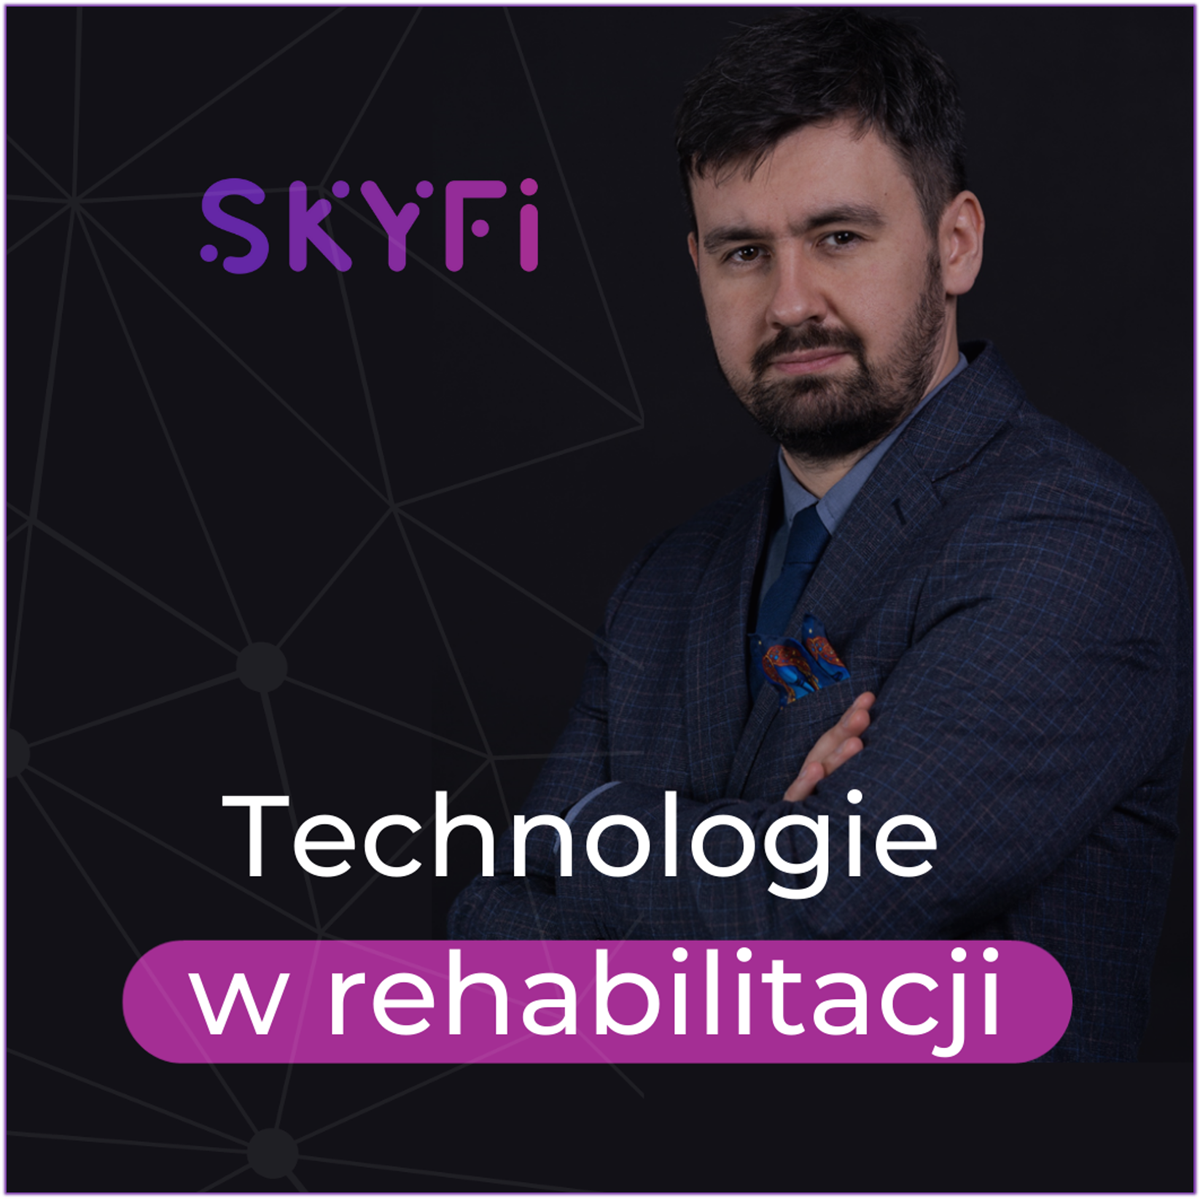 Skyfi-podcast-010-diagnostyka-w-placówce-rehabilitacyjnej